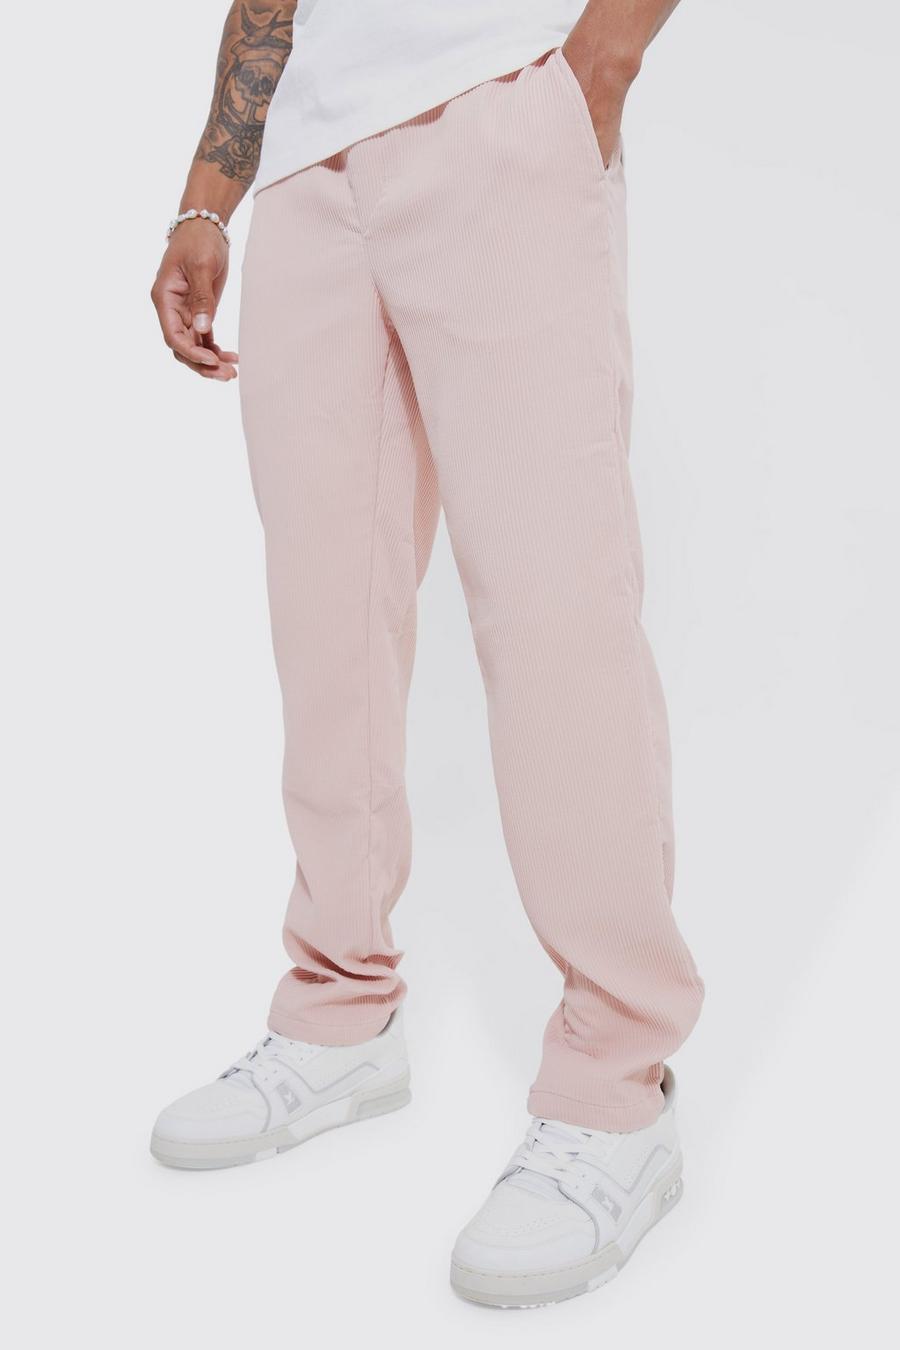 Pantalón plisado ajustado, Light pink rosa